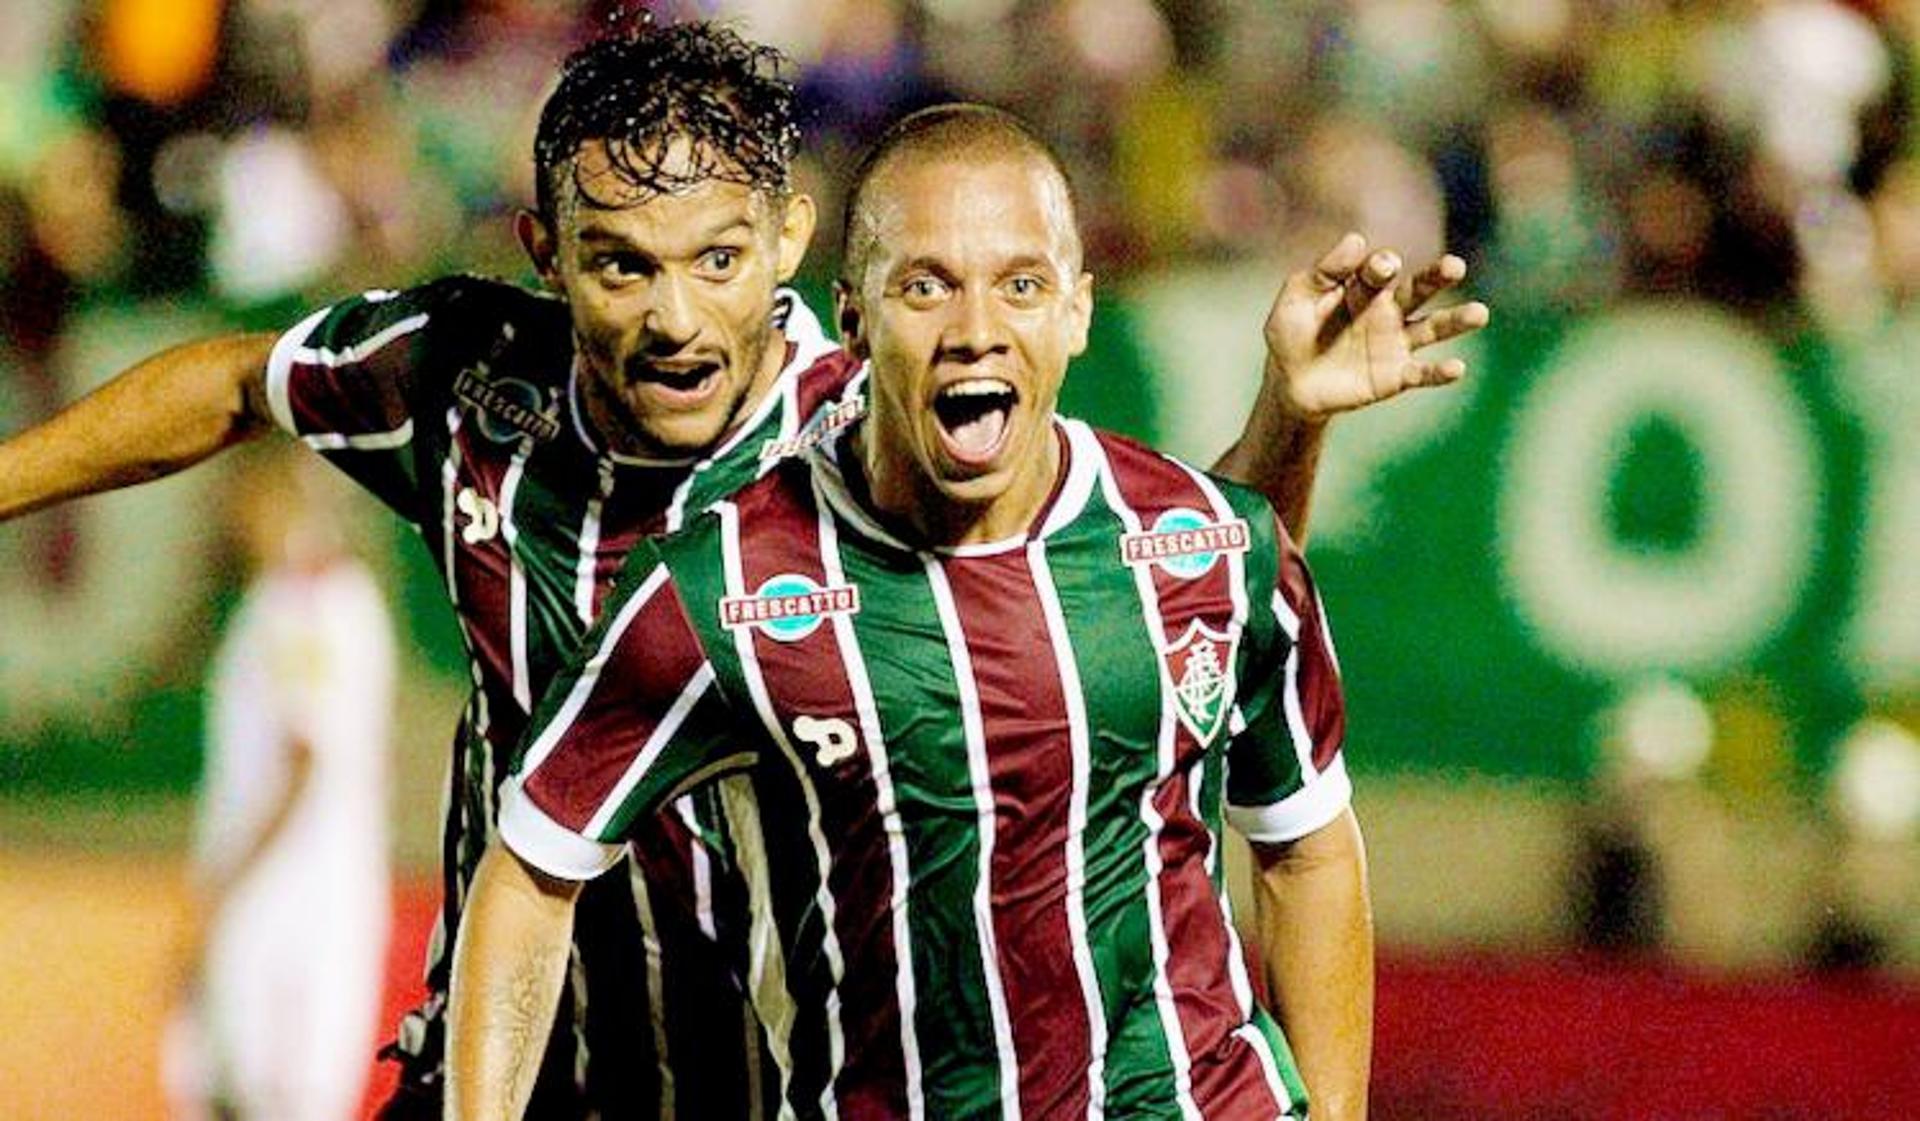 Confira as imagens da vitória do Fluminense na Copa do Brasil